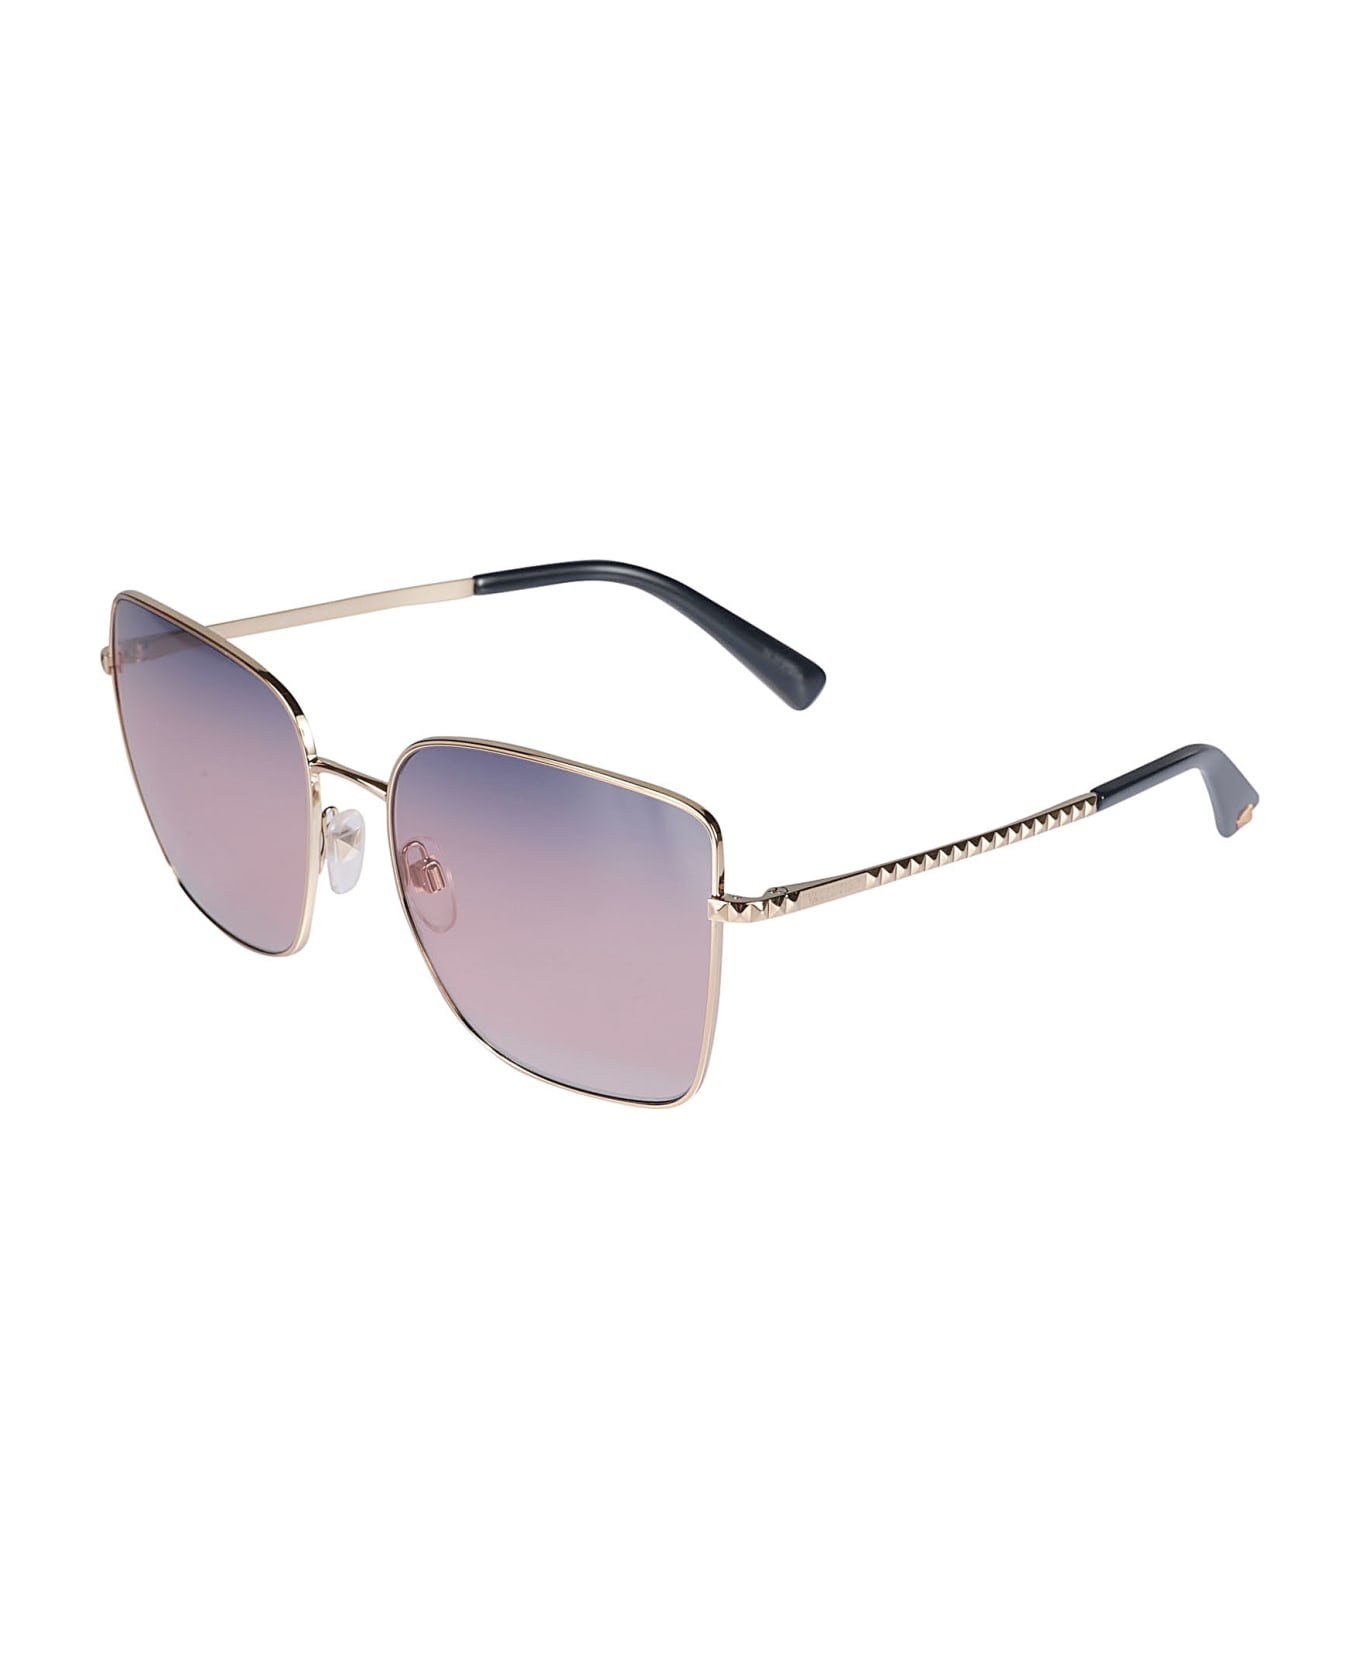 Valentino Eyewear Sole3004/16 Sunglasses - N/A